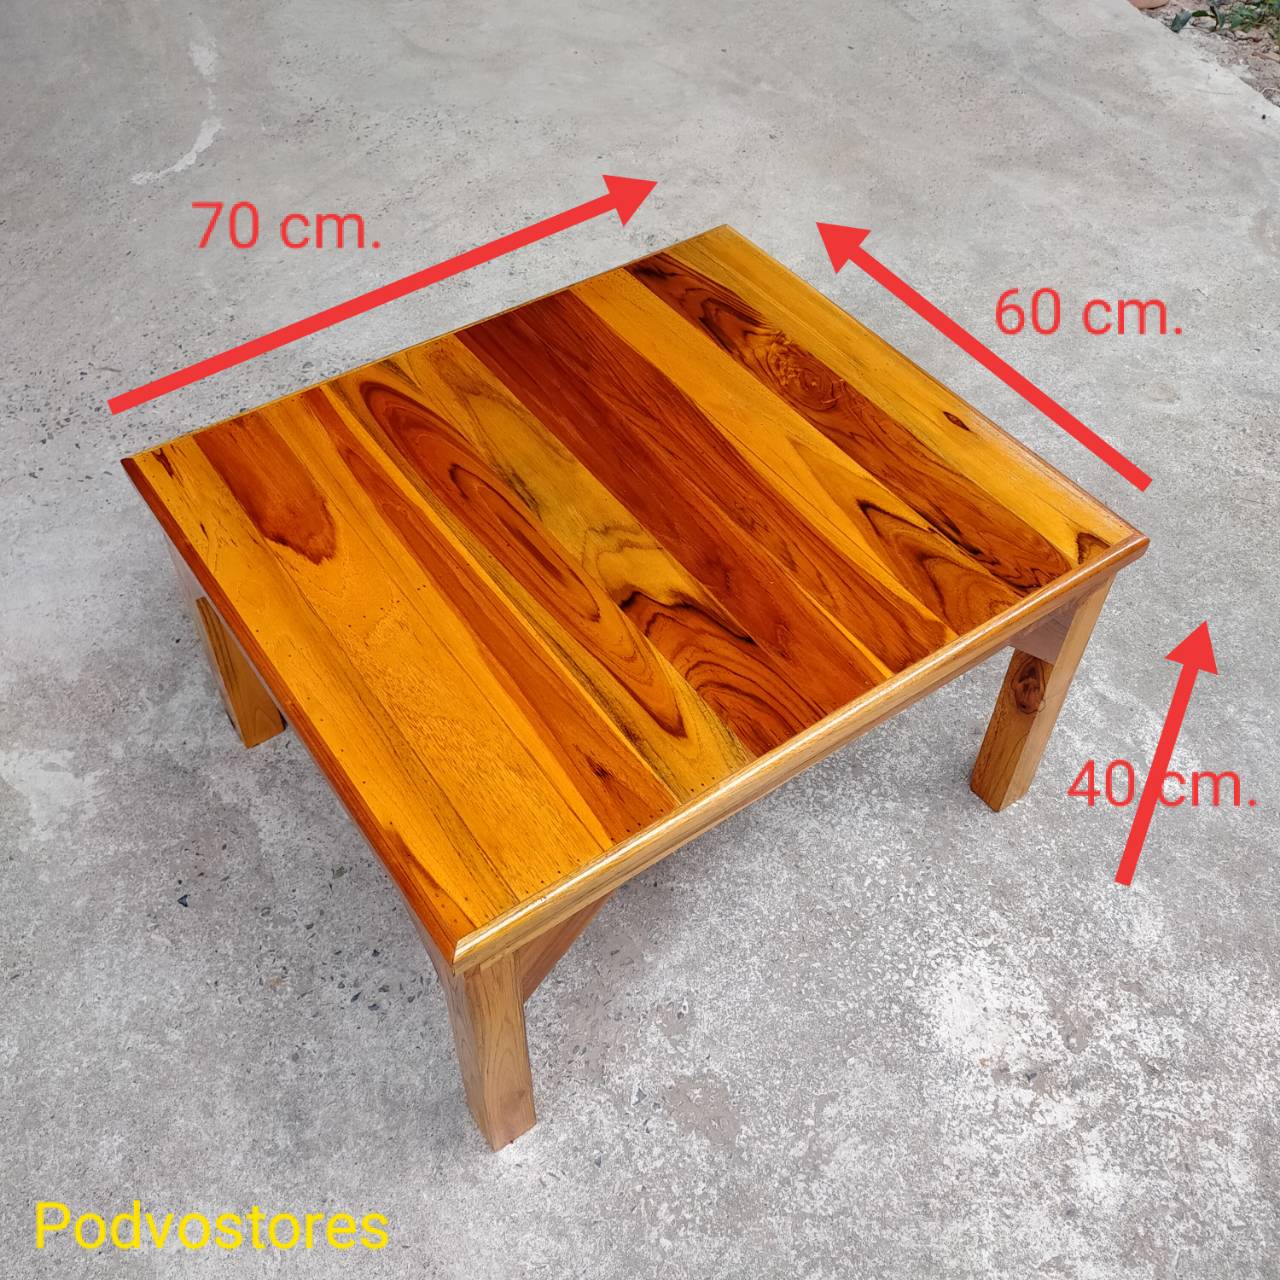 โต๊ะไม้สัก โต๊ะญี่ปุ่น (กว้าง 60 ยาว 70 สูง 40 cm.) ทำจากไม้สัก ลงสีเคลือบแลคเกอร์ โต๊ะวางของ ที่วางของ โต๊ะตัวเตี้ย โต๊ะปิ๊กนิก โต๊ะตัวเล็ก